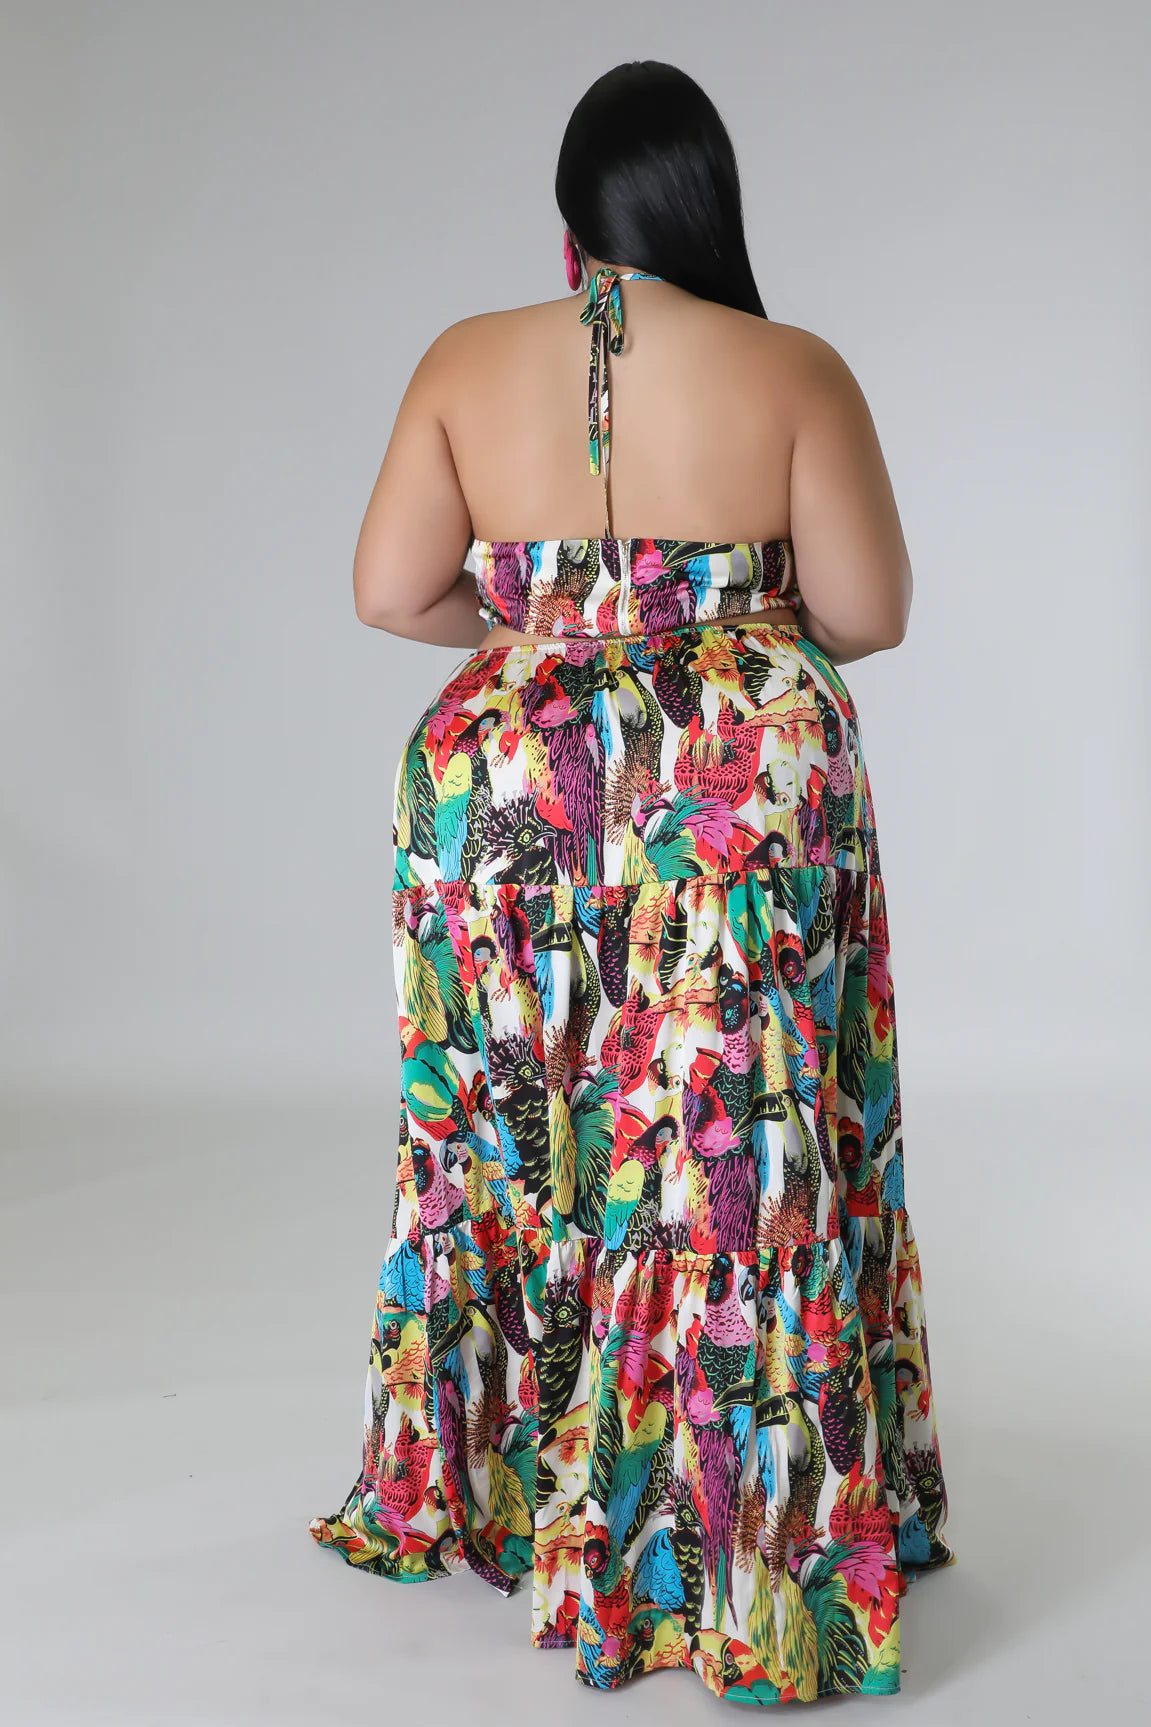 Exotic Getaway Tropical Maxi Dress Multicolor (Curvy) - Ali’s Couture 